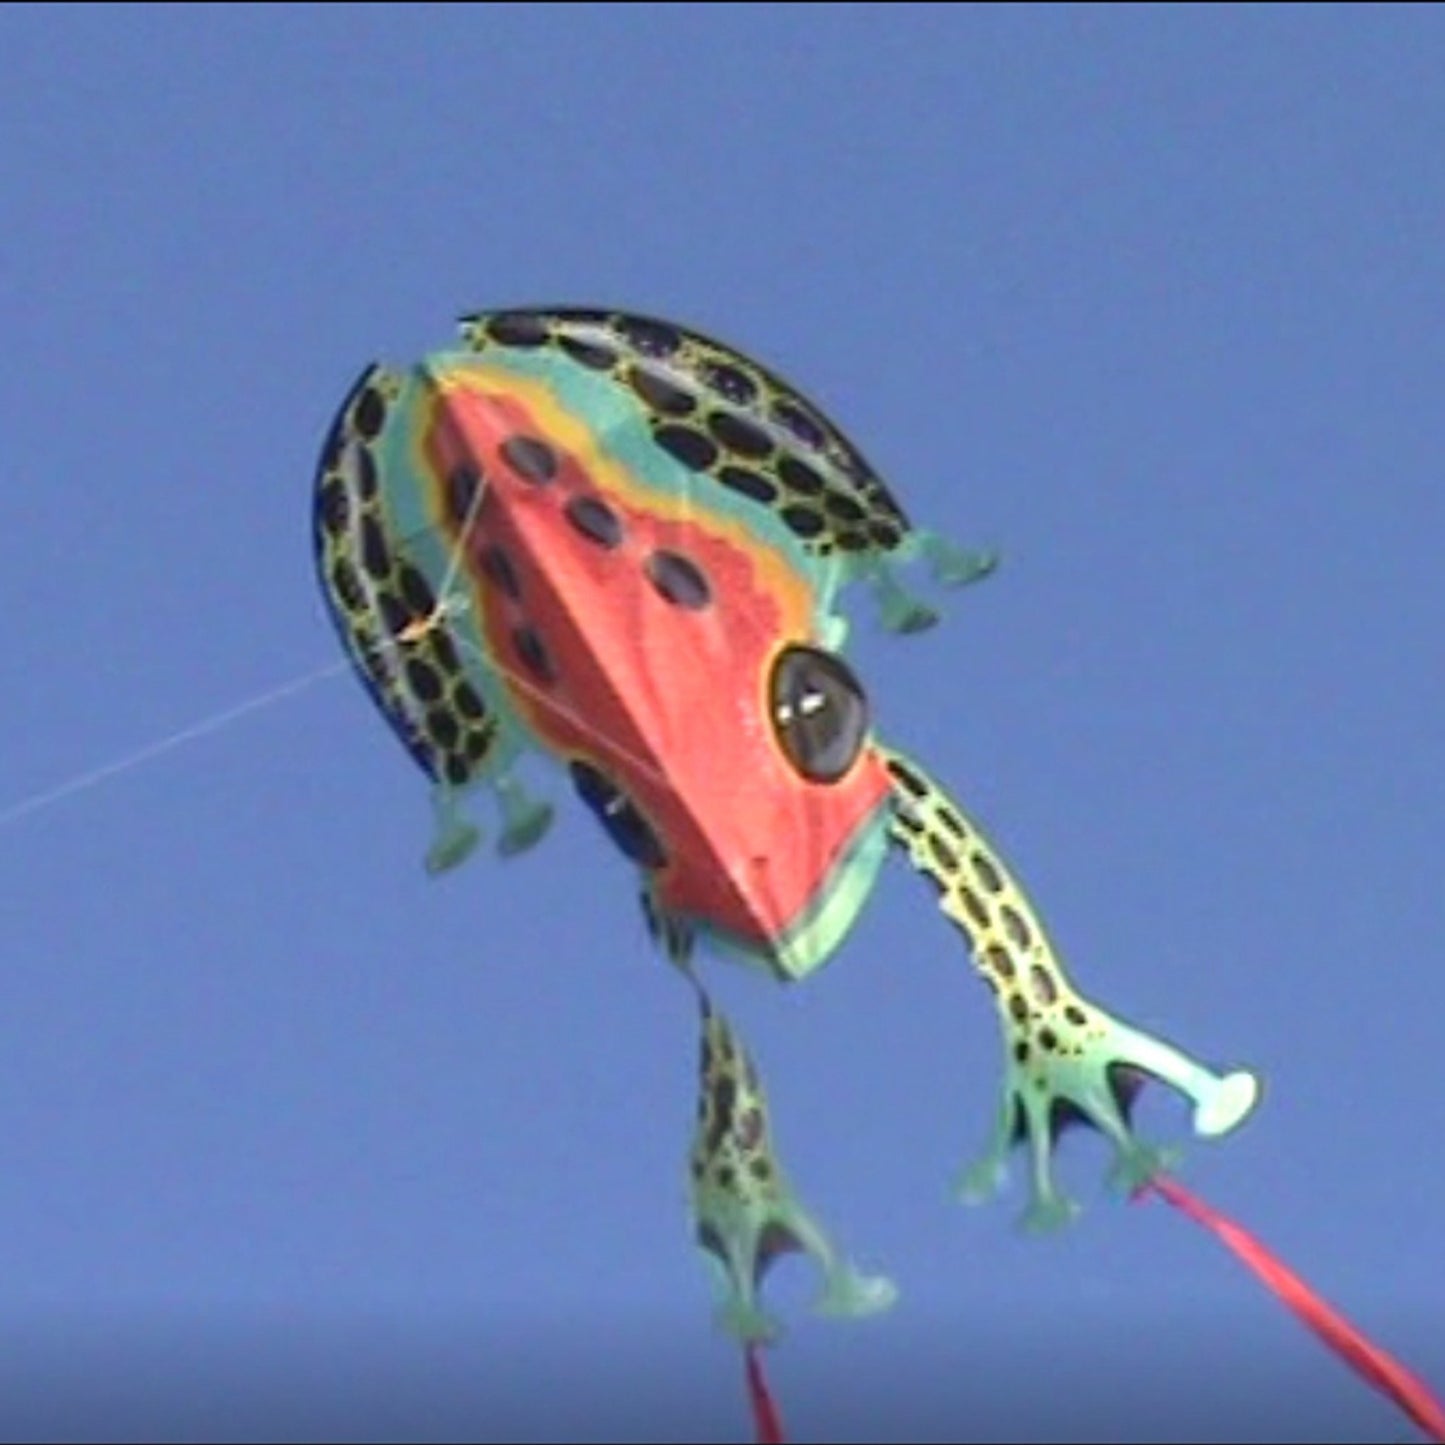 windnsun rainforest dartfrog nylon kite flying